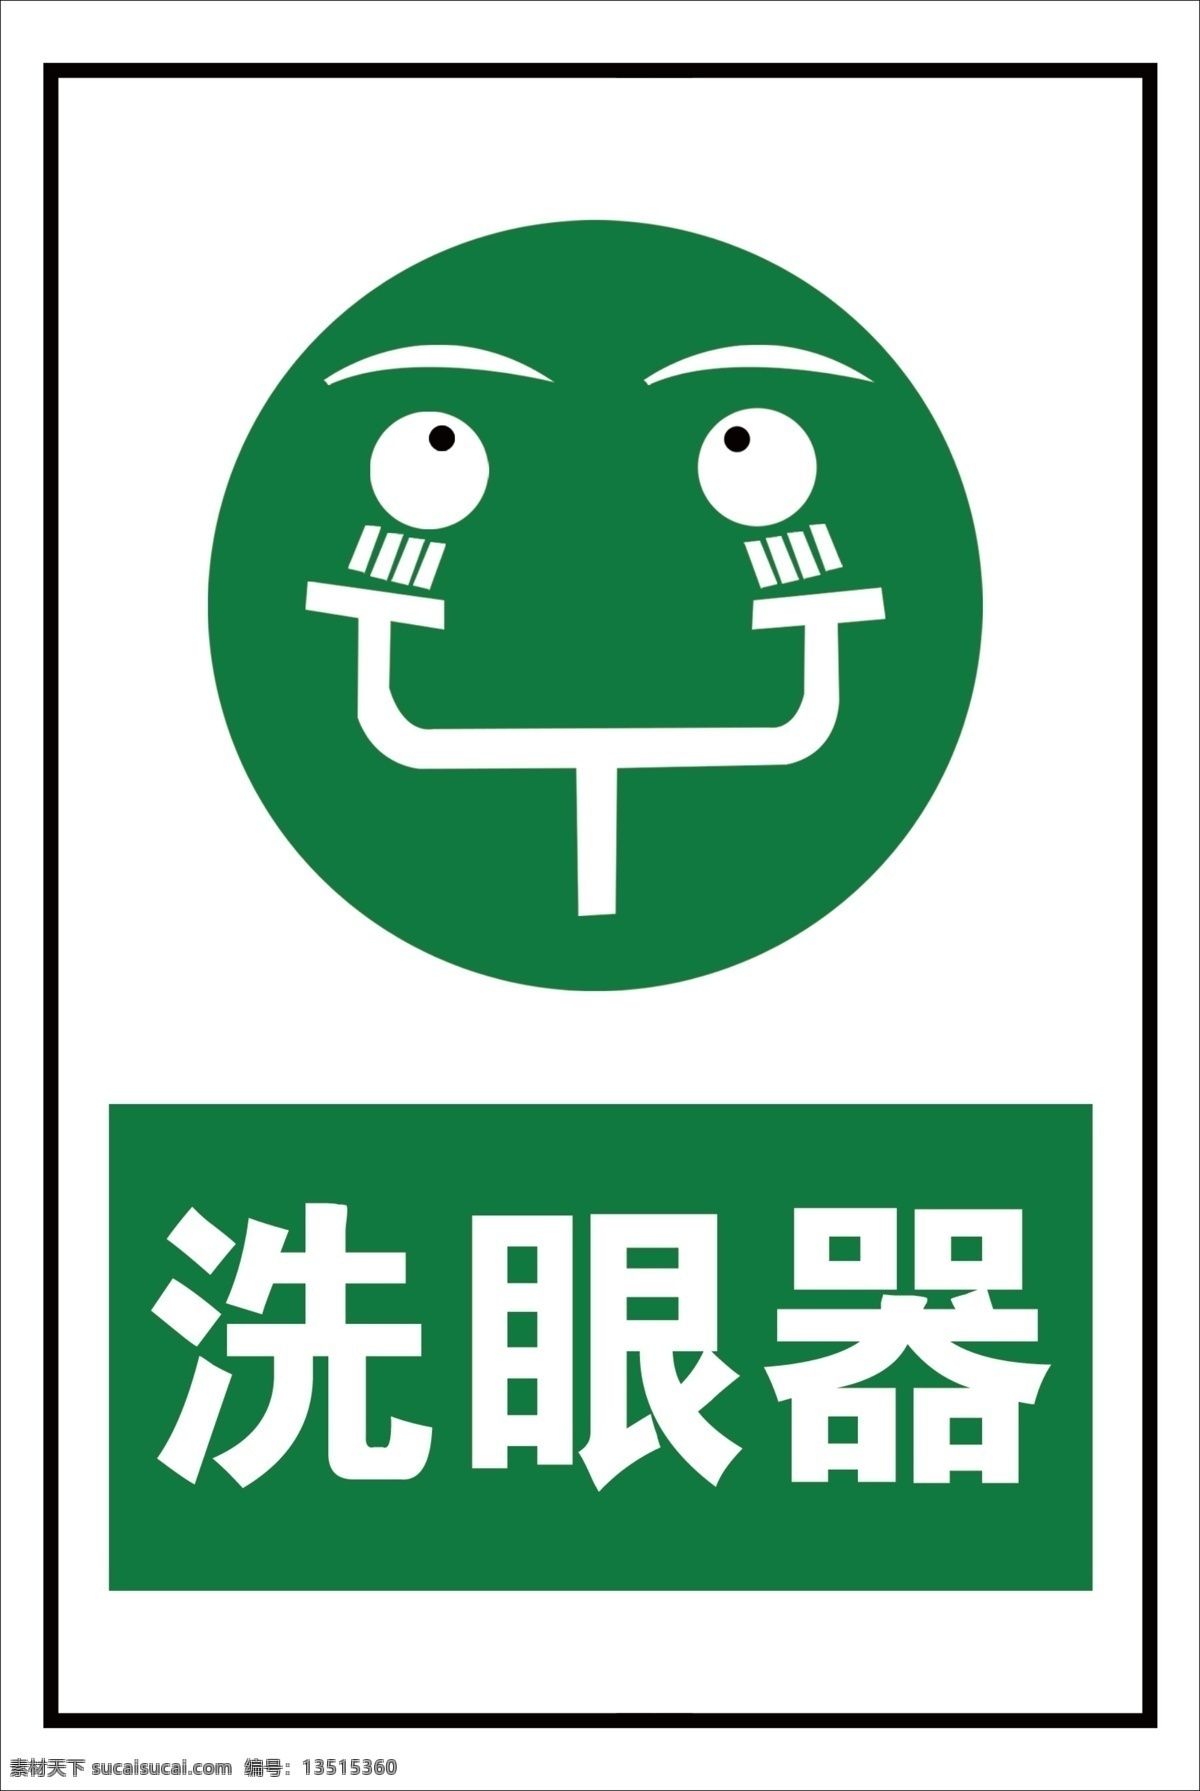 洗 眼 器 警示 标识 洗眼器警示 洗眼器 标志 标志图标 公共标识标志